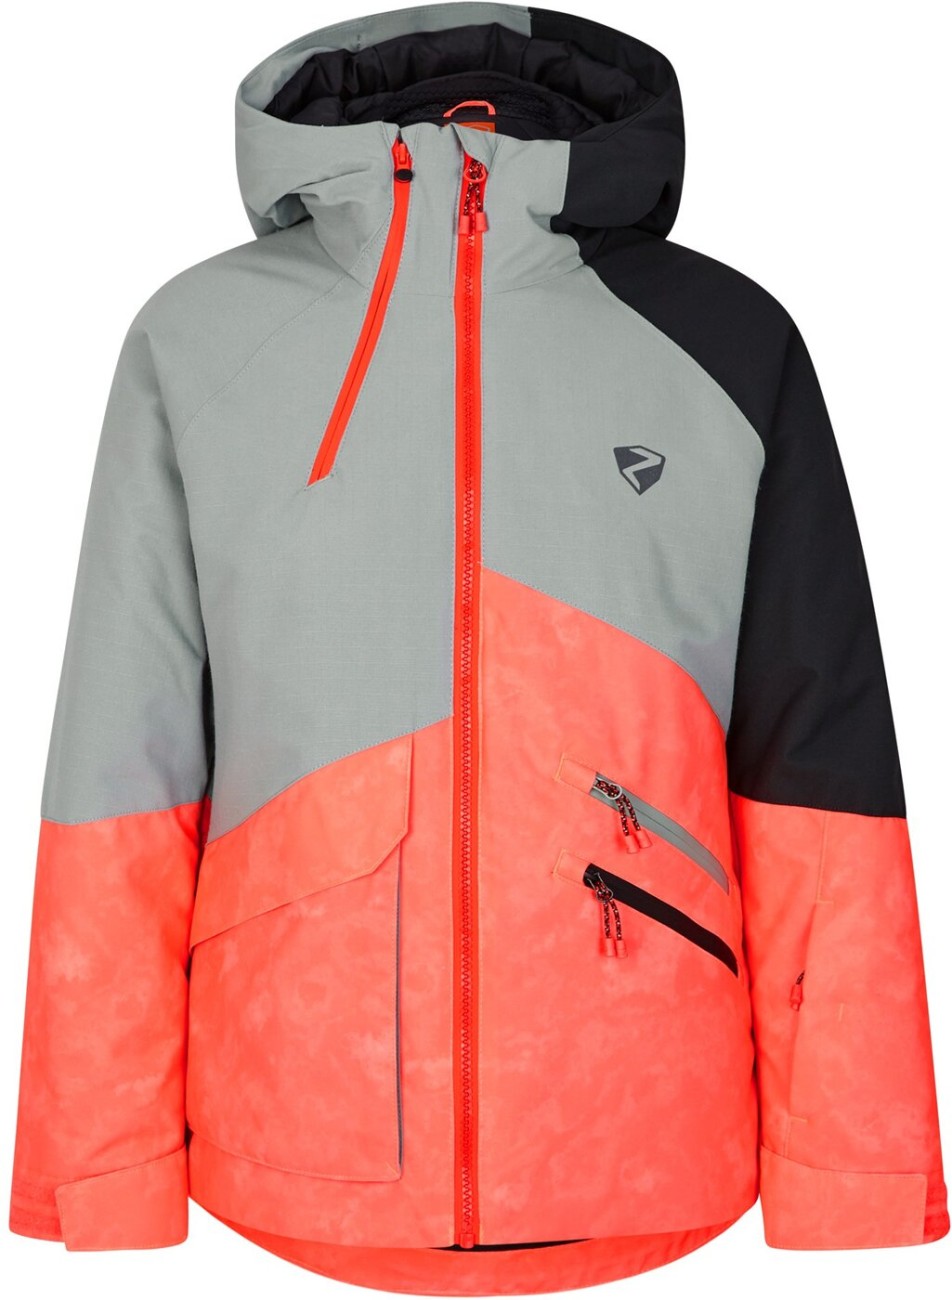 ZIENER ARUMA jun (jacket ski) dye tie hot kaufen red online